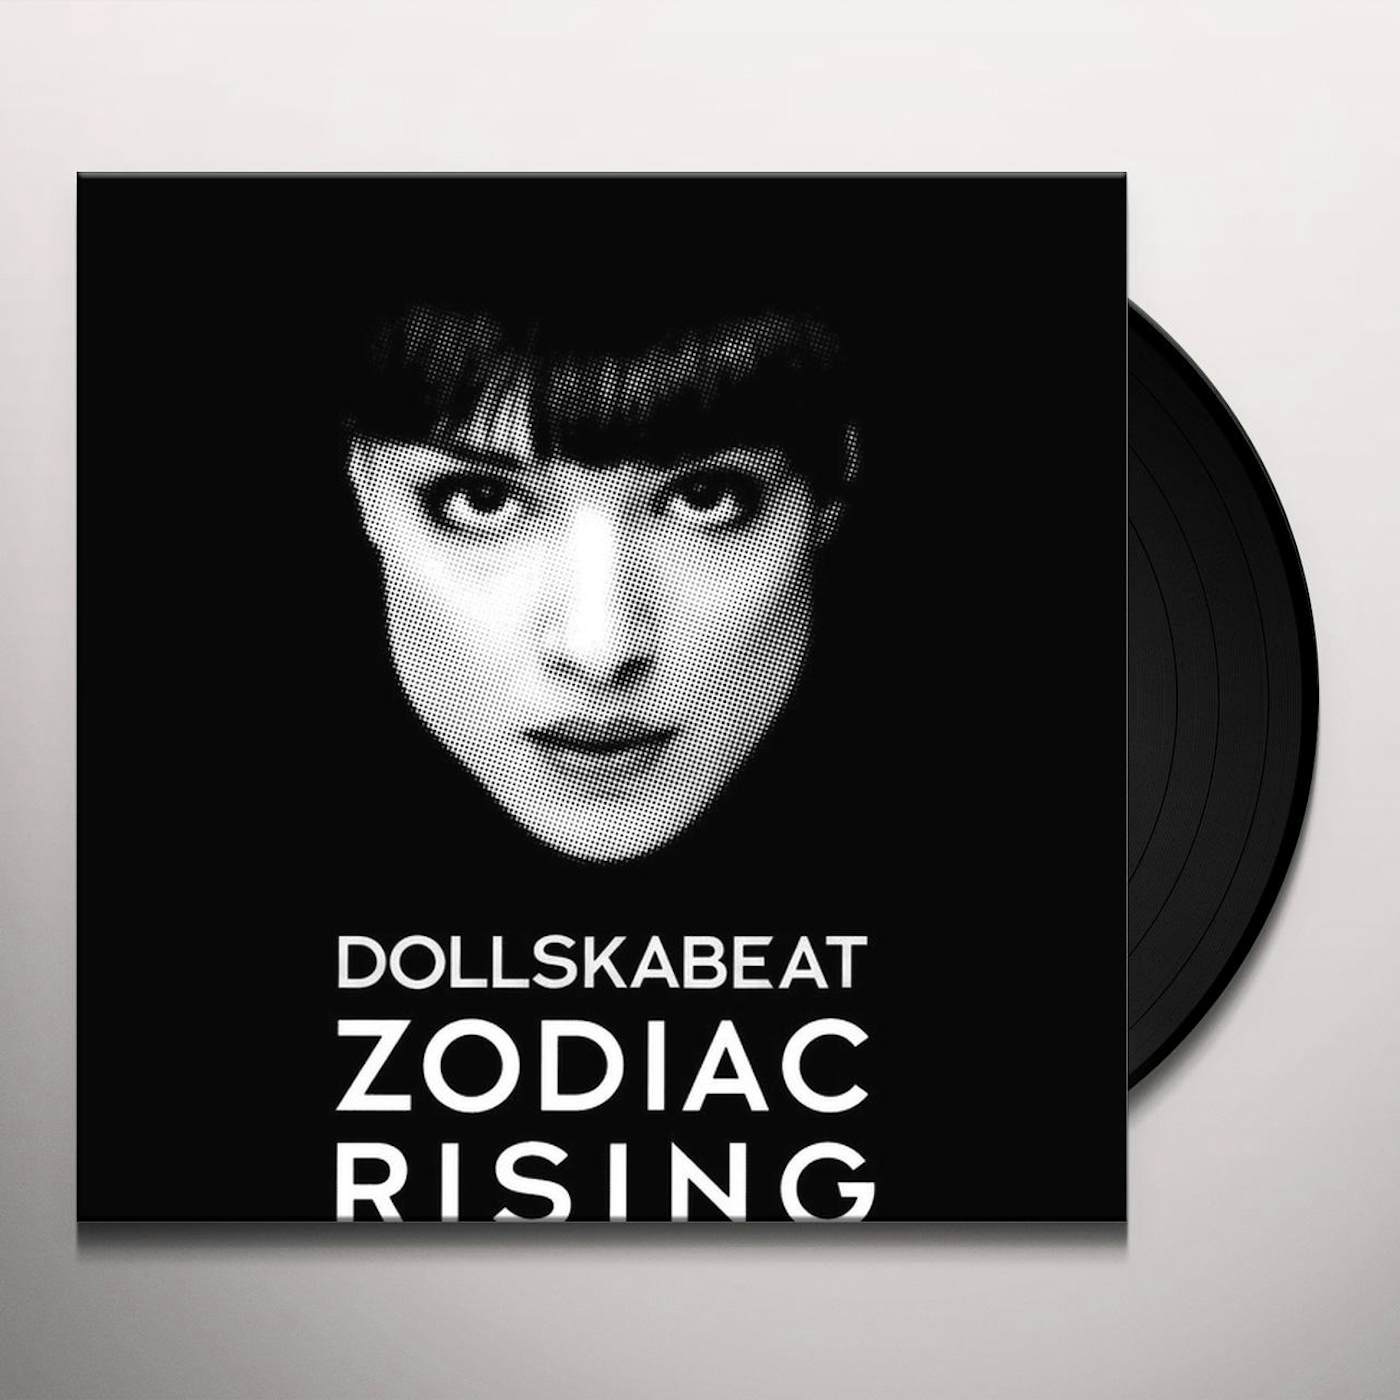 Dollskabeat Zodiac Rising Vinyl Record